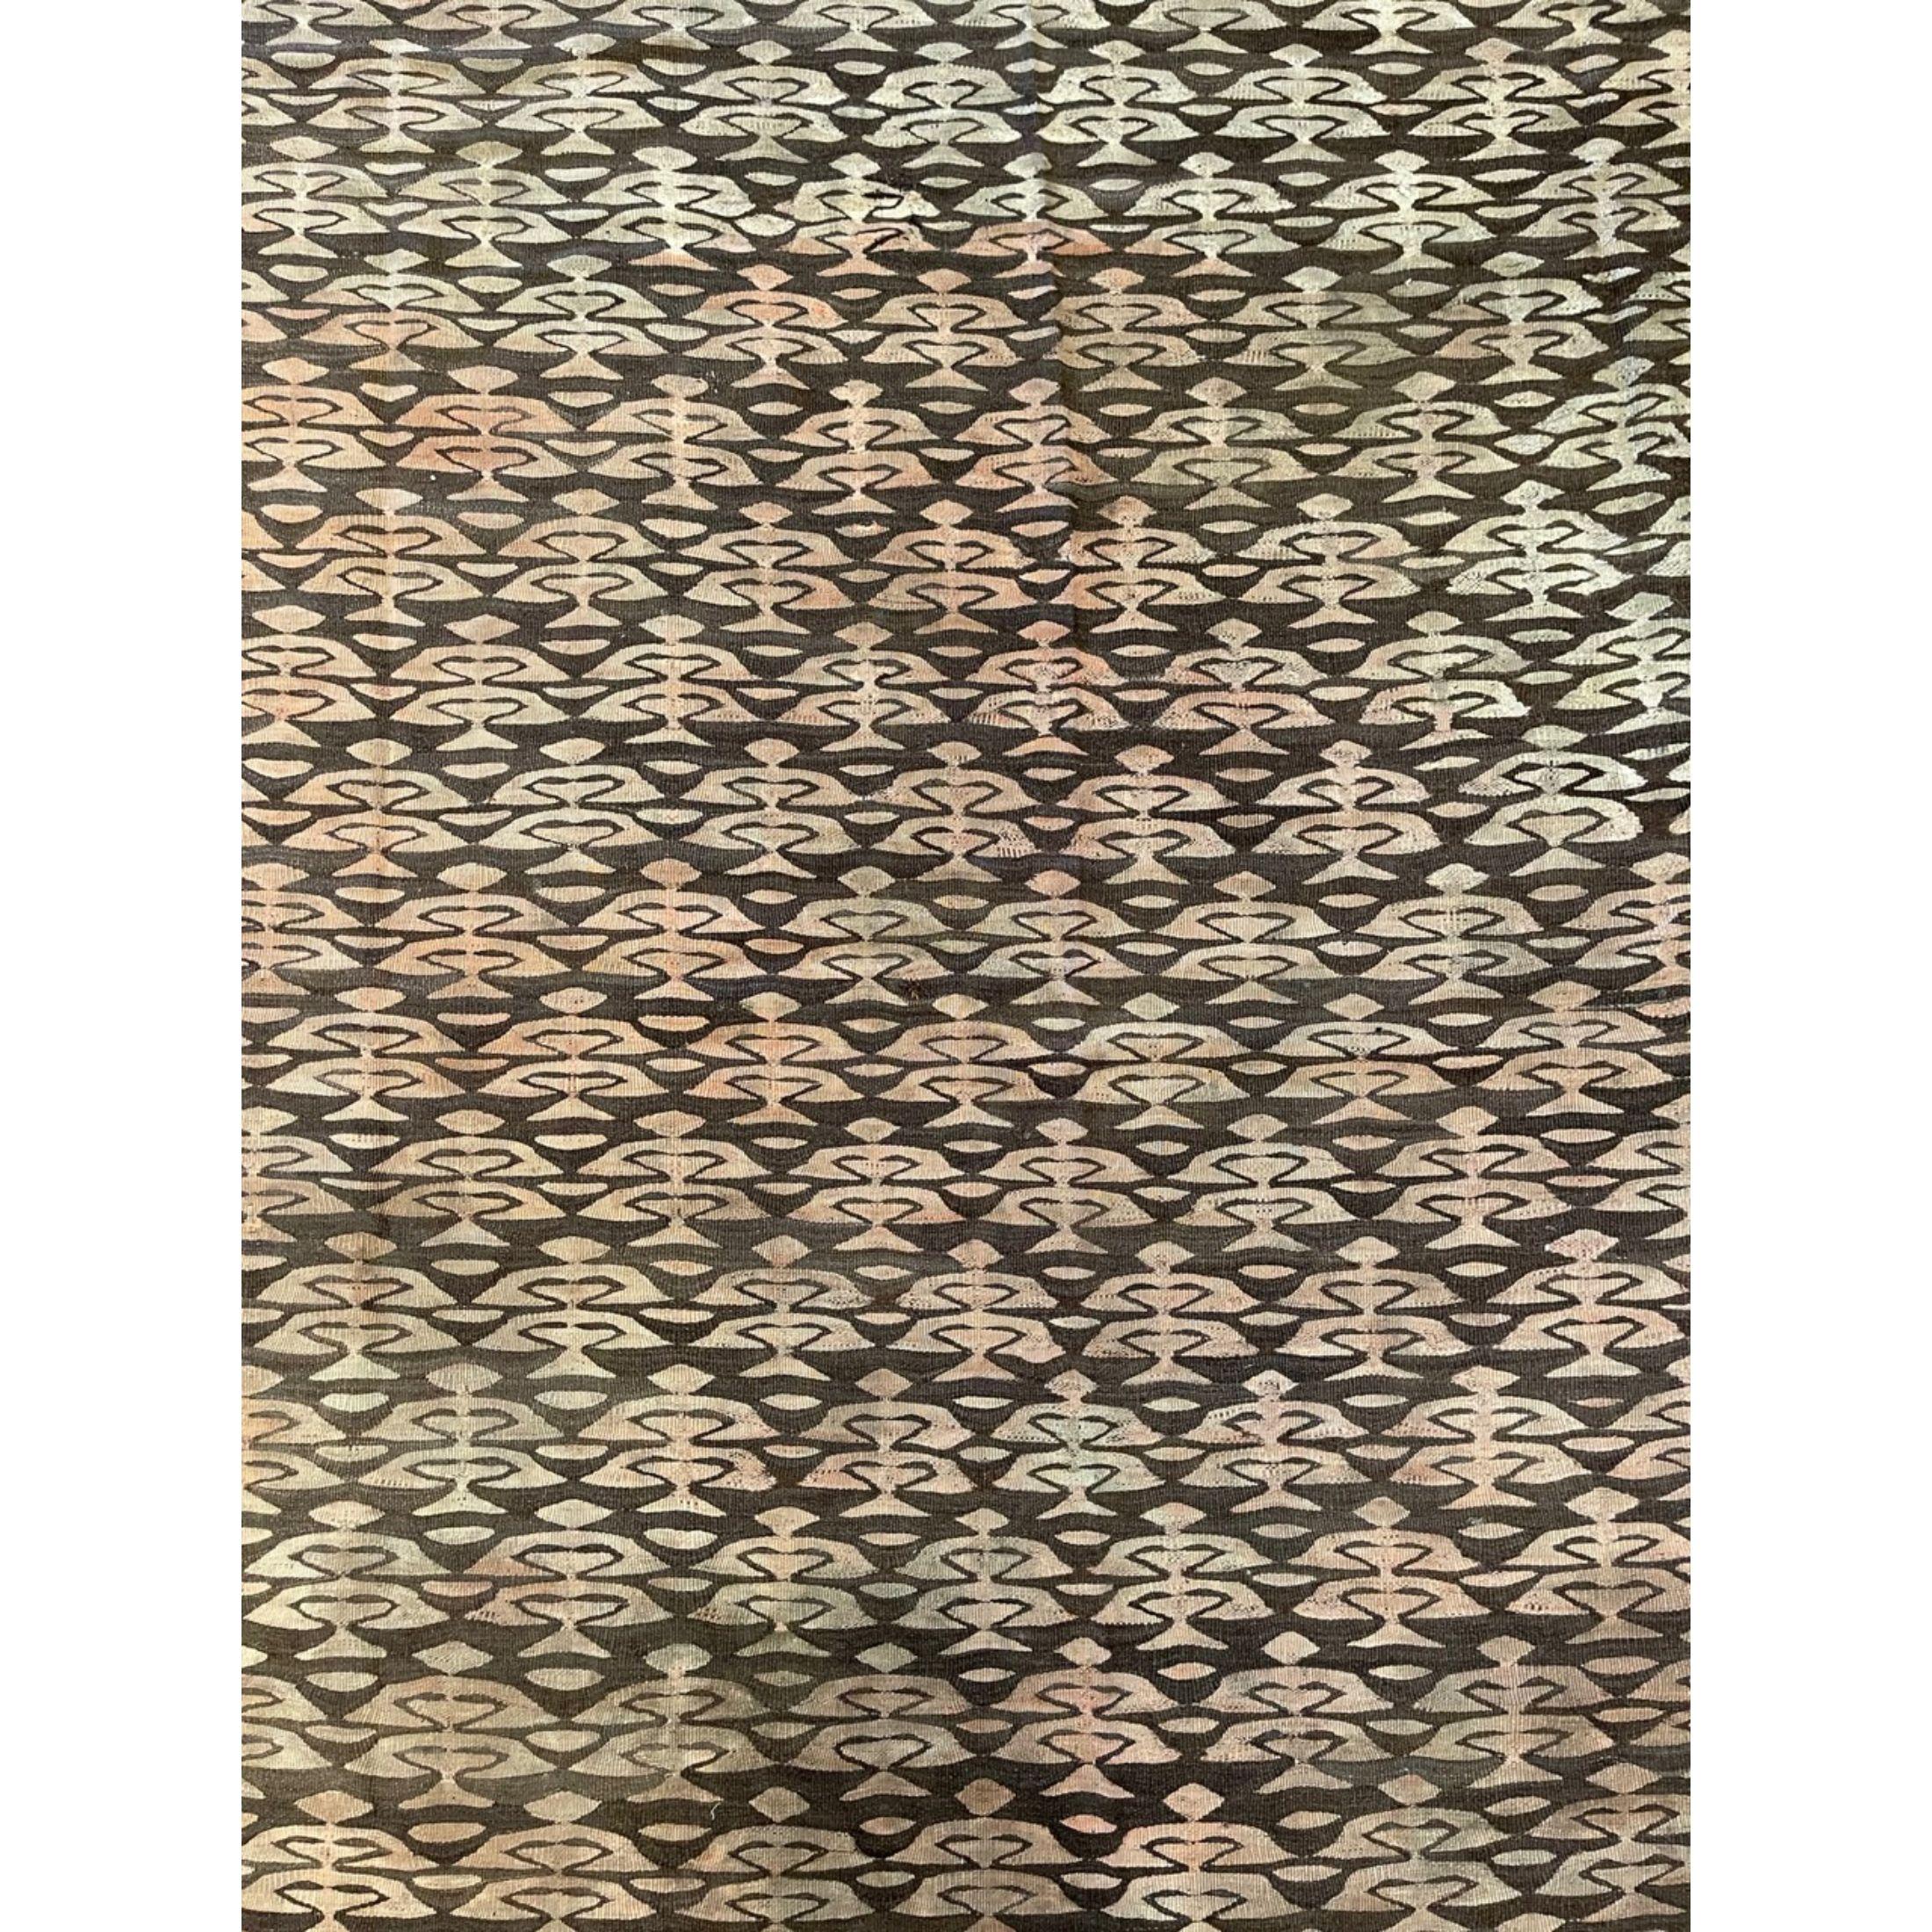 Les Rug & Kilim de Bessarabie sont des tapis tissés à plat, originaires des provinces russes d'Ukraine et de Moldavie à la fin des années 1800 et au début des années 1900. Si la plupart des experts en tapis classent les tapis tissés à plat dans la